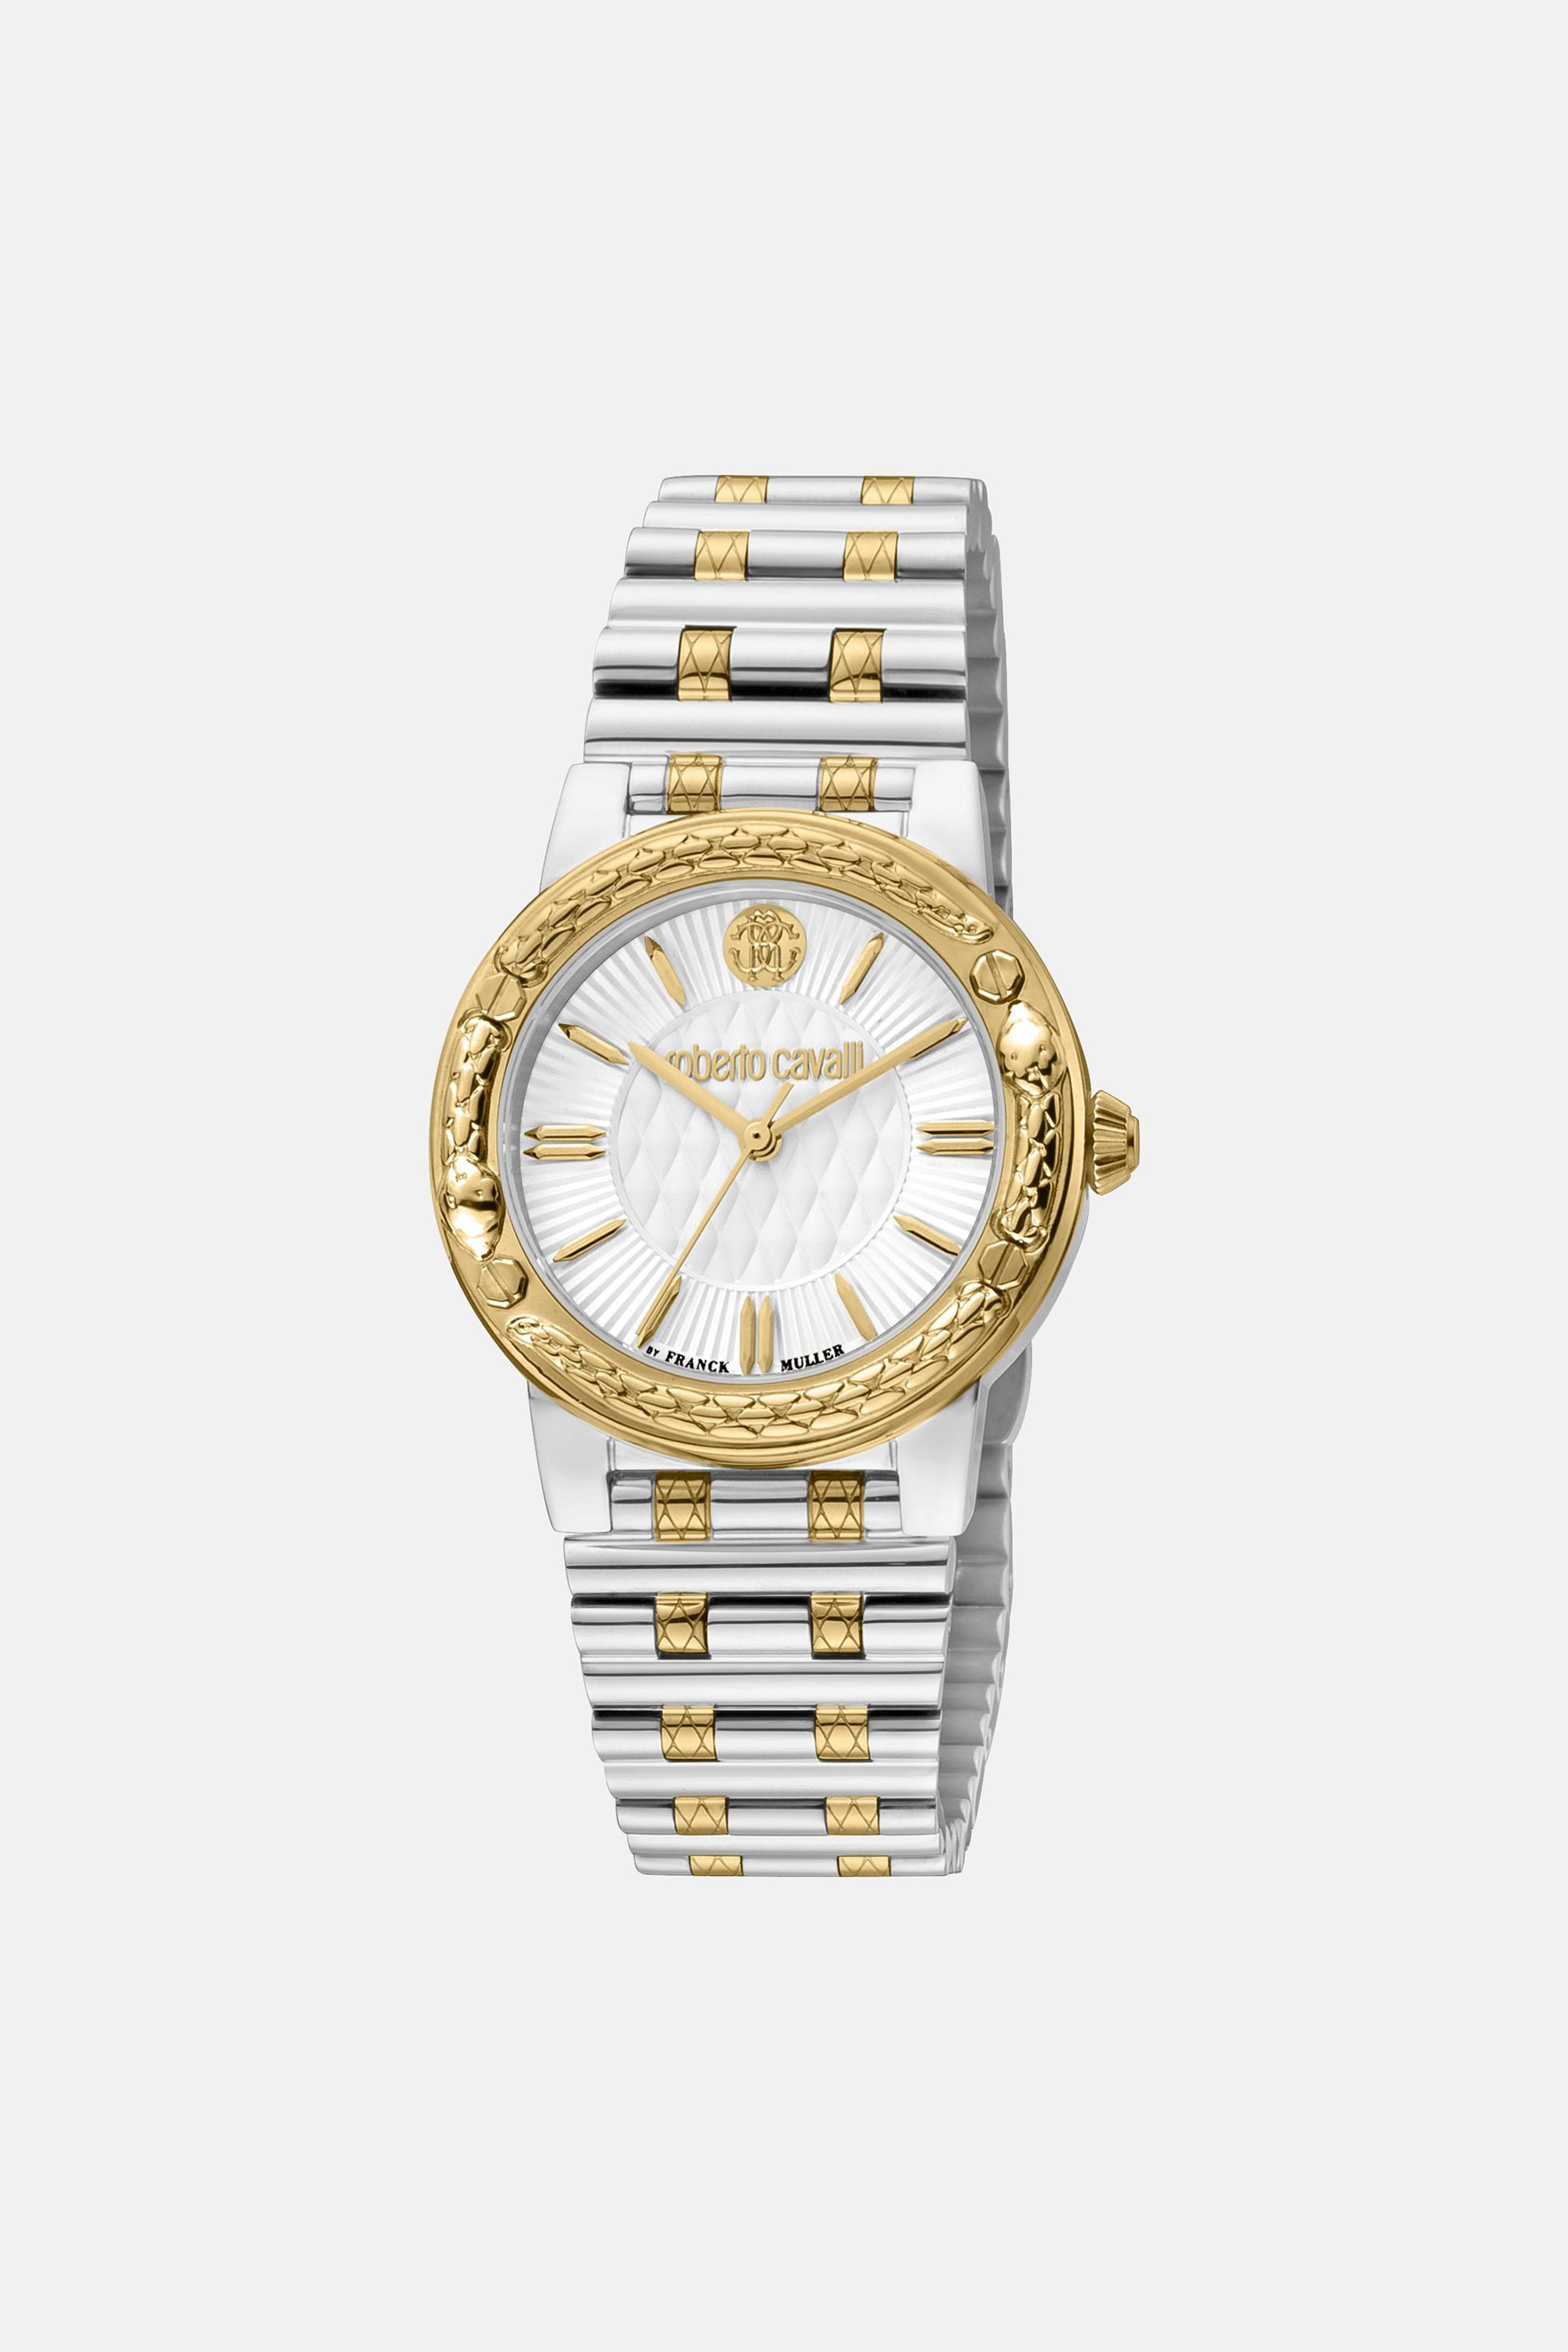 JUST CAVALLI Women's Watches – i-Watch